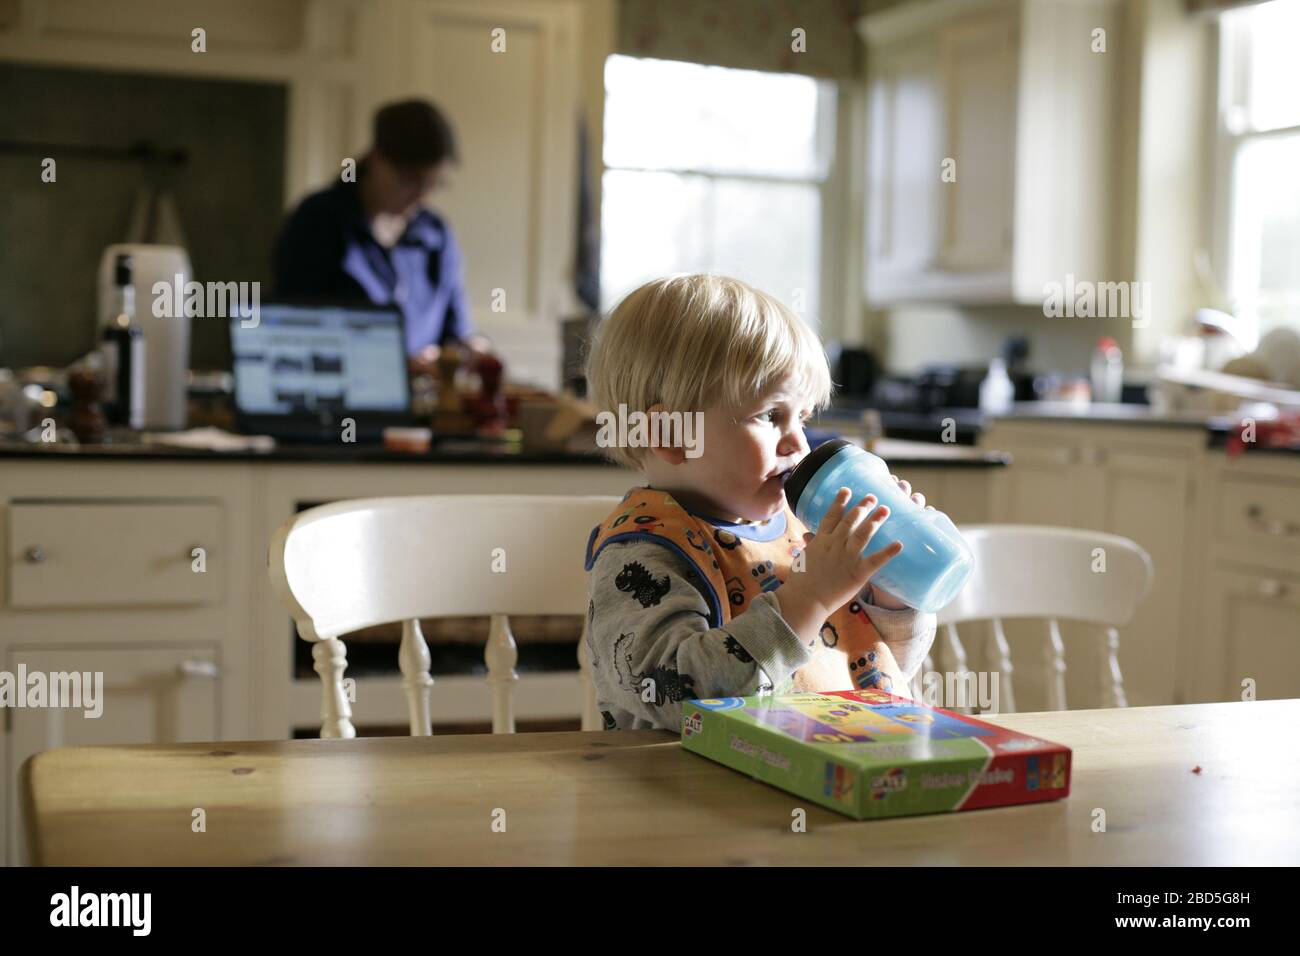 Boisson enfant-enfant à partir de la bouteille de dinks pendant le dîner de cuisine de la mère pendant la période d'auto-isolation - 2020 COVID-19 pandémie de coronavirus Banque D'Images